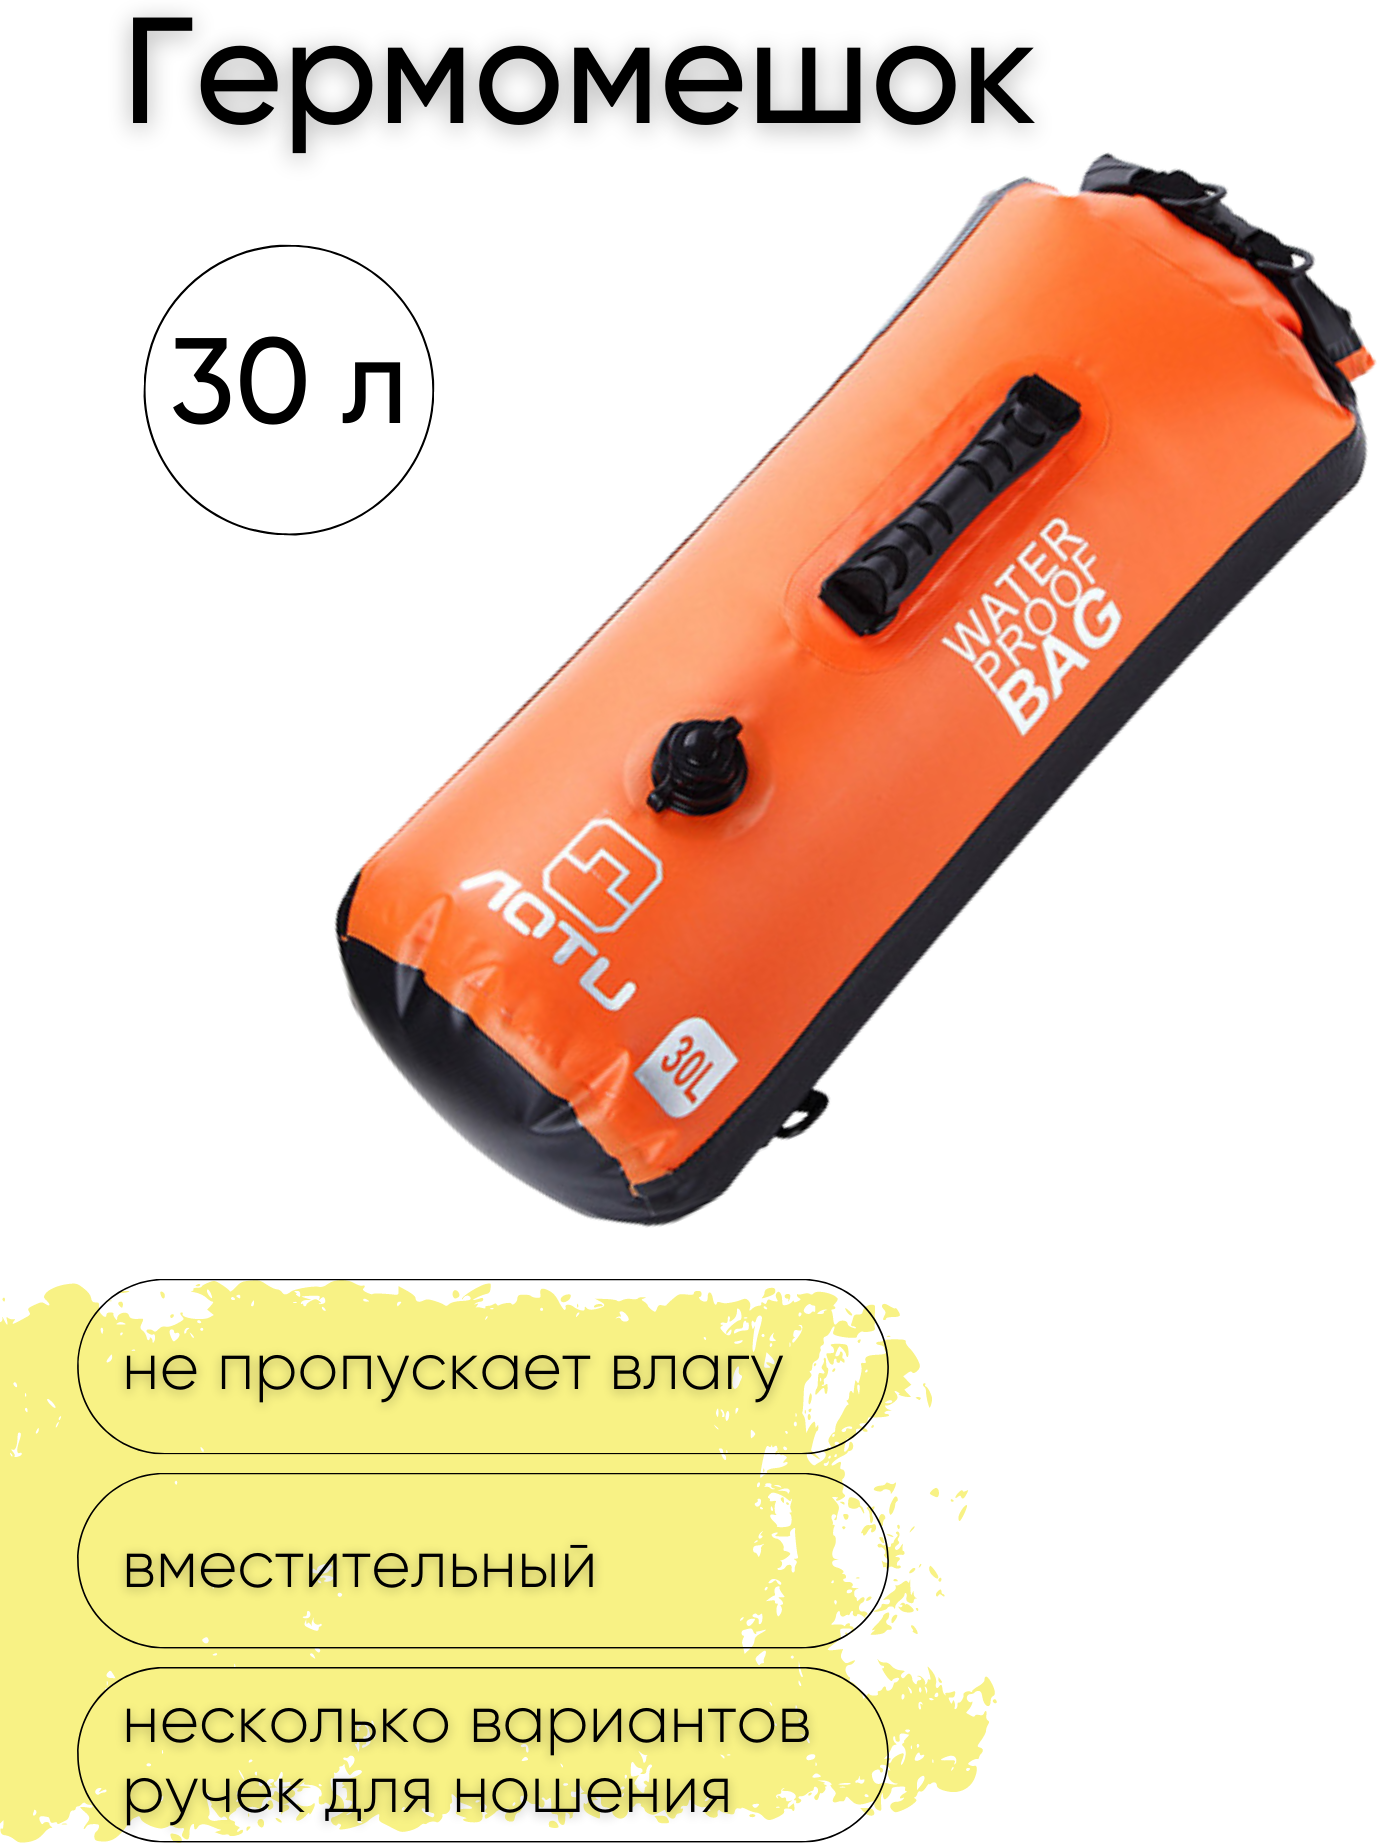 Водонепроницаемая сумка с лямками и ручкой, Гермочехол, Гермосумка с клапаном, цвет оранжевый, объем 30 л.